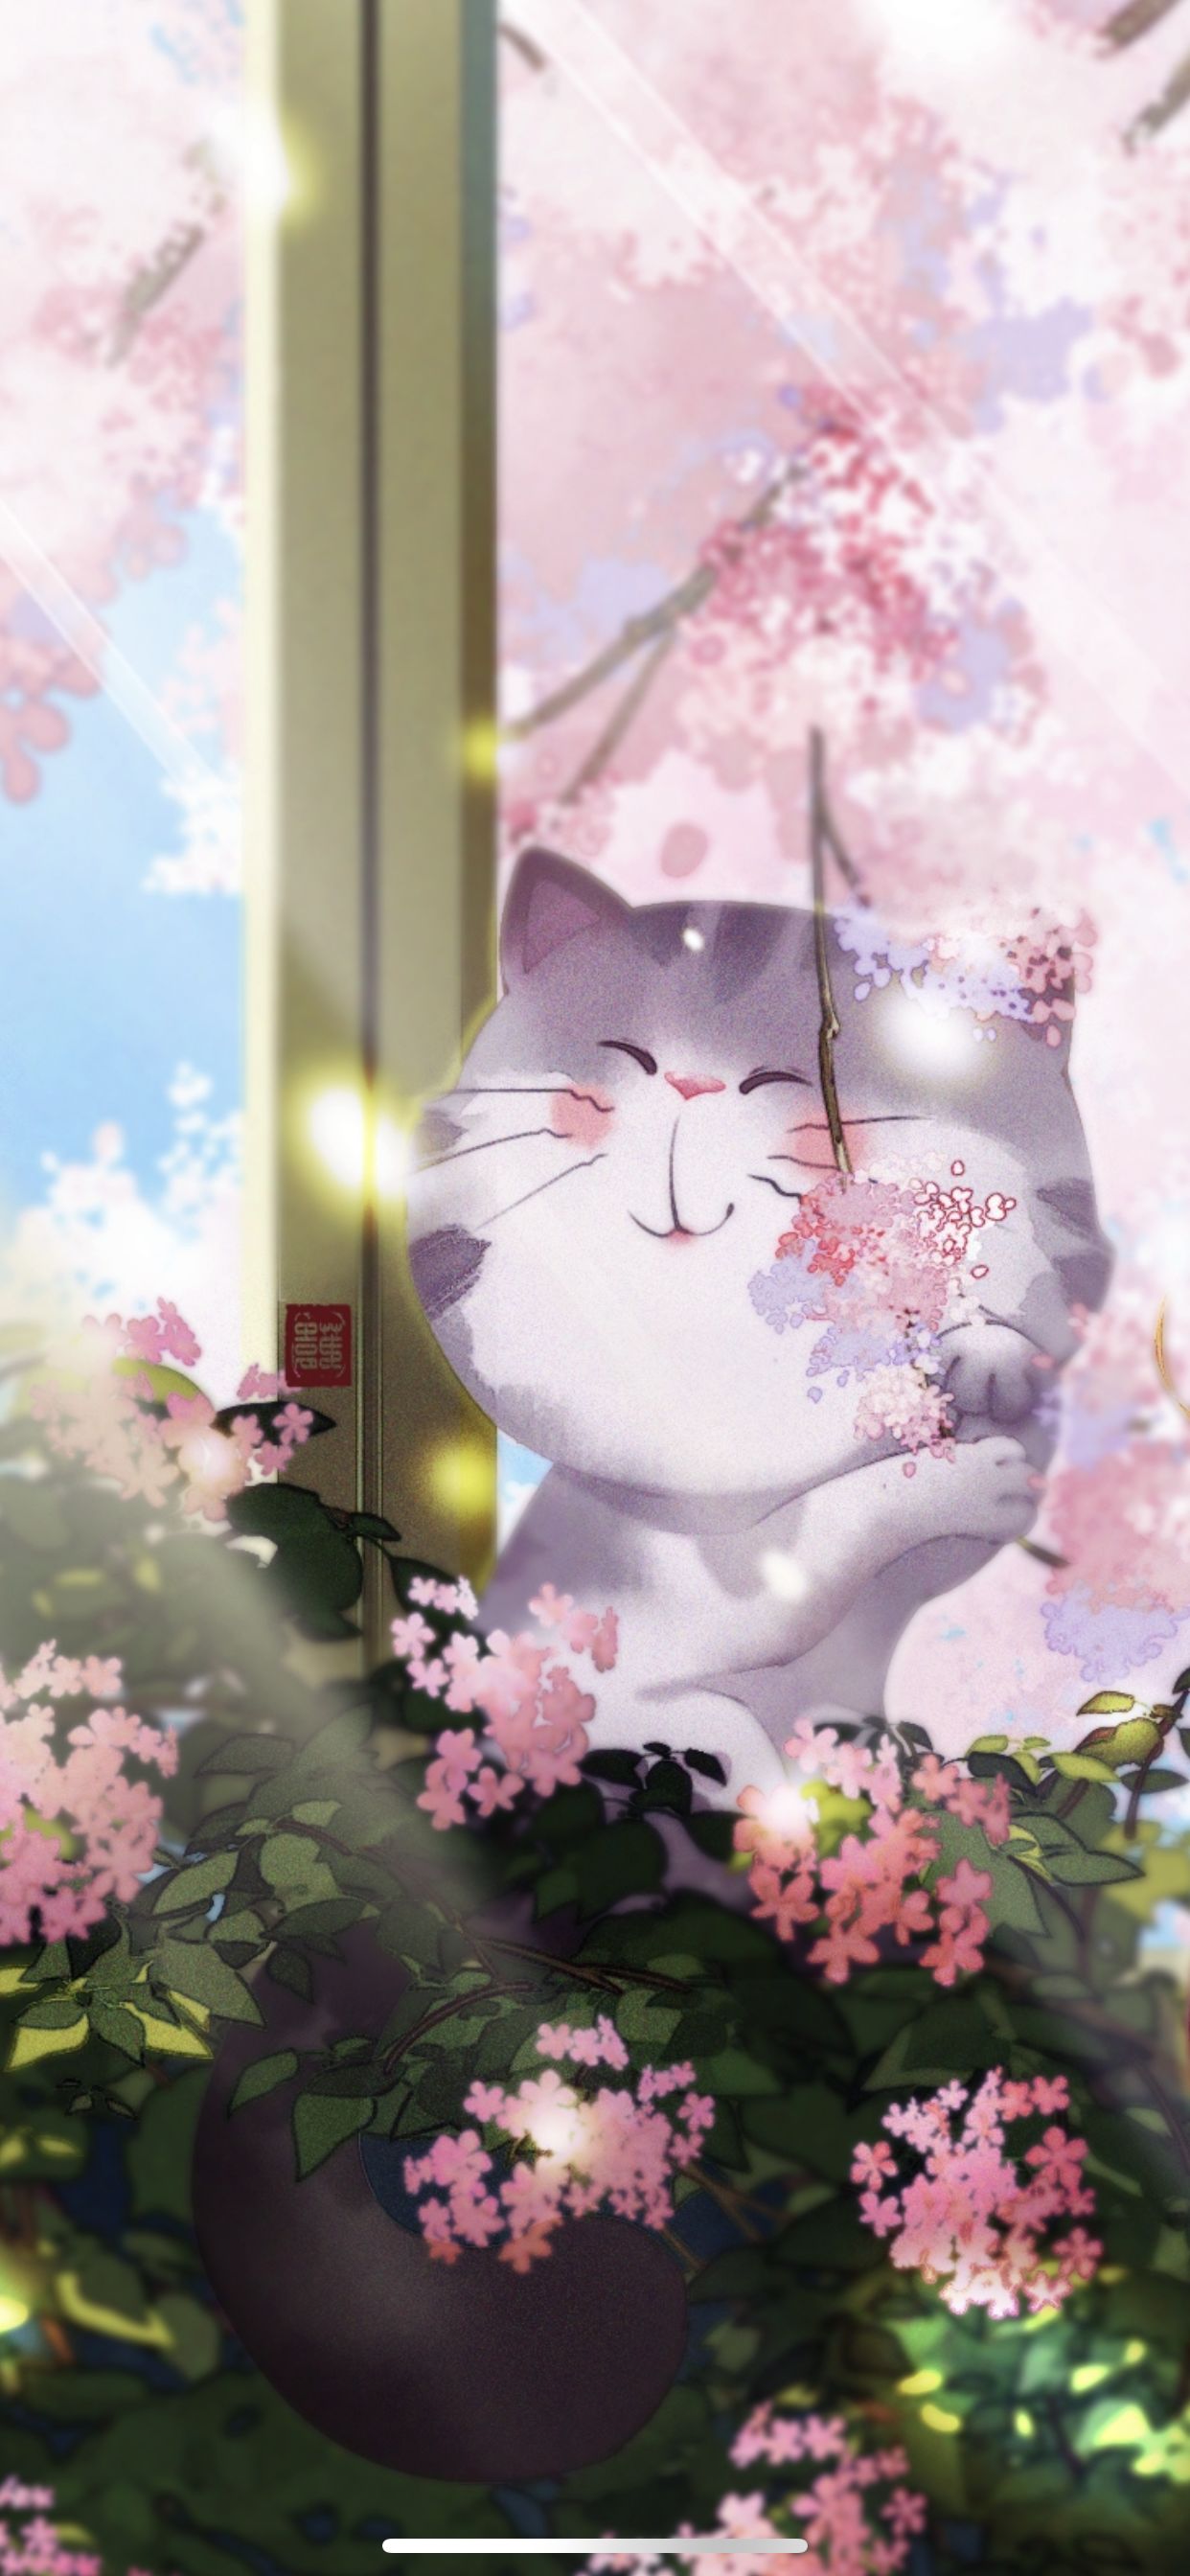 樱花大脸猫插画图片壁纸